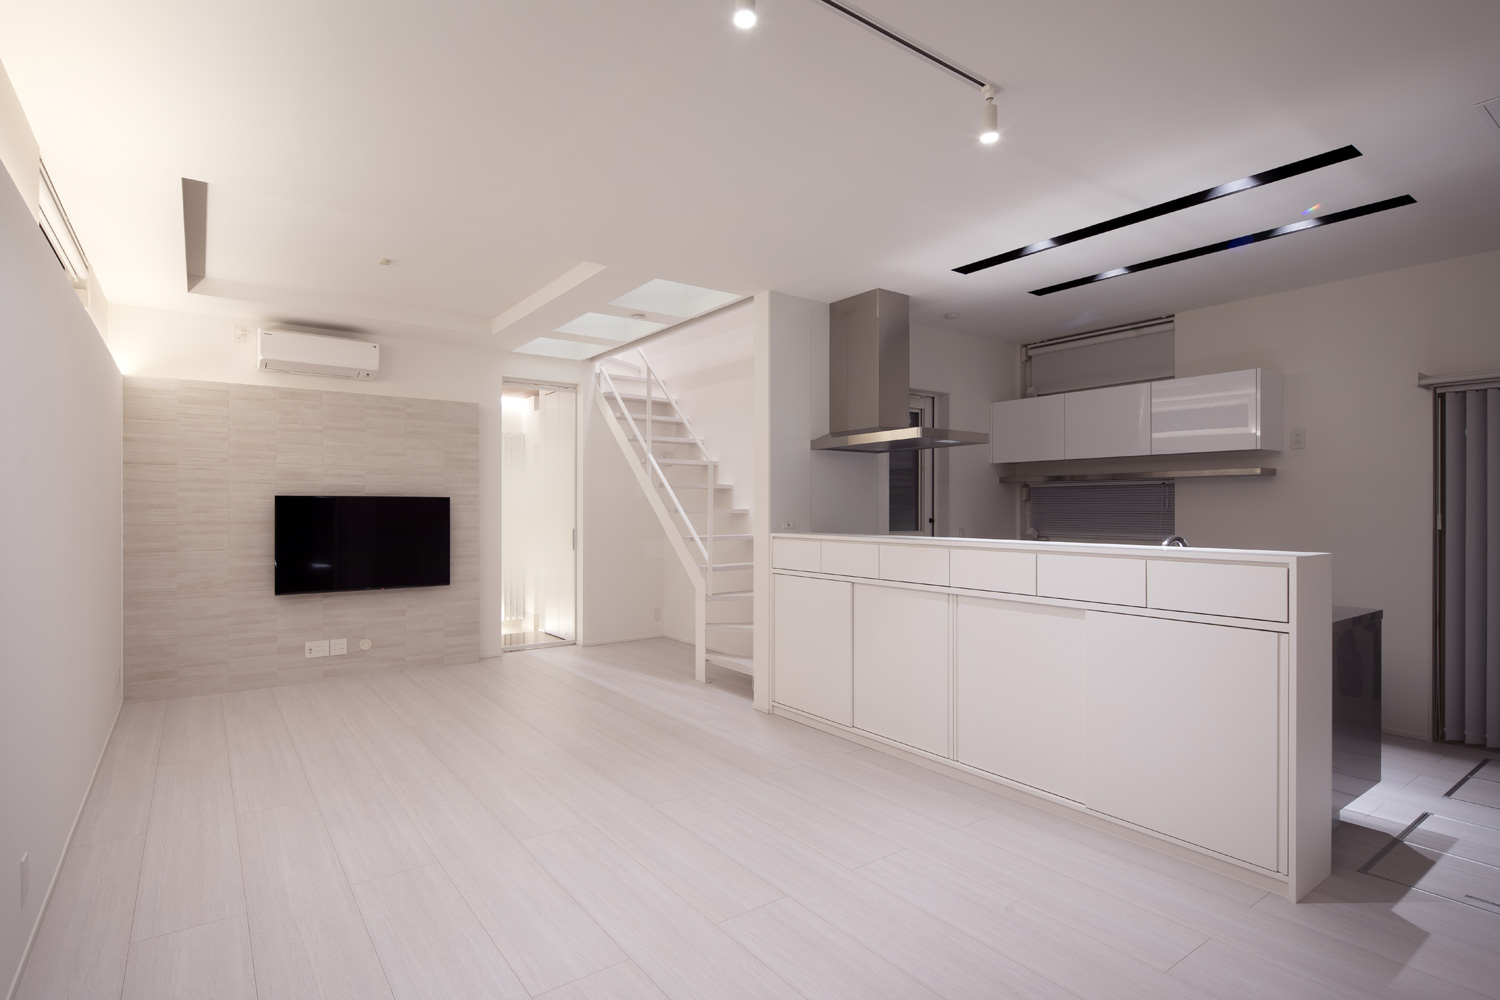 キッチンの天井を掘り込んで照明を取り付けた、真っ白なLDK・デザイン住宅